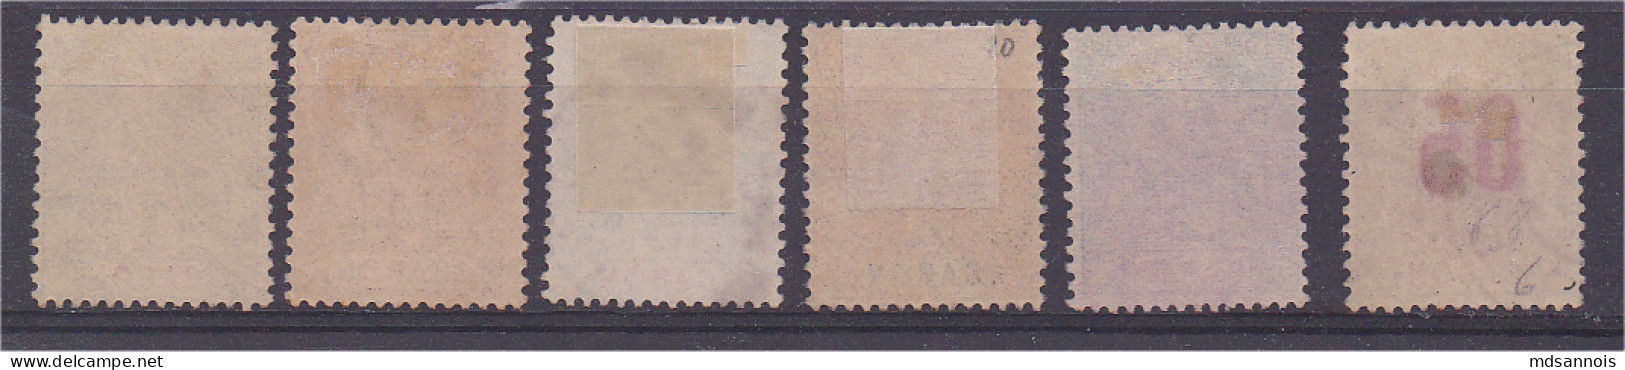 Gabon Lot De 6 Timbres Oblitérés Scan Recto / Verso - Used Stamps